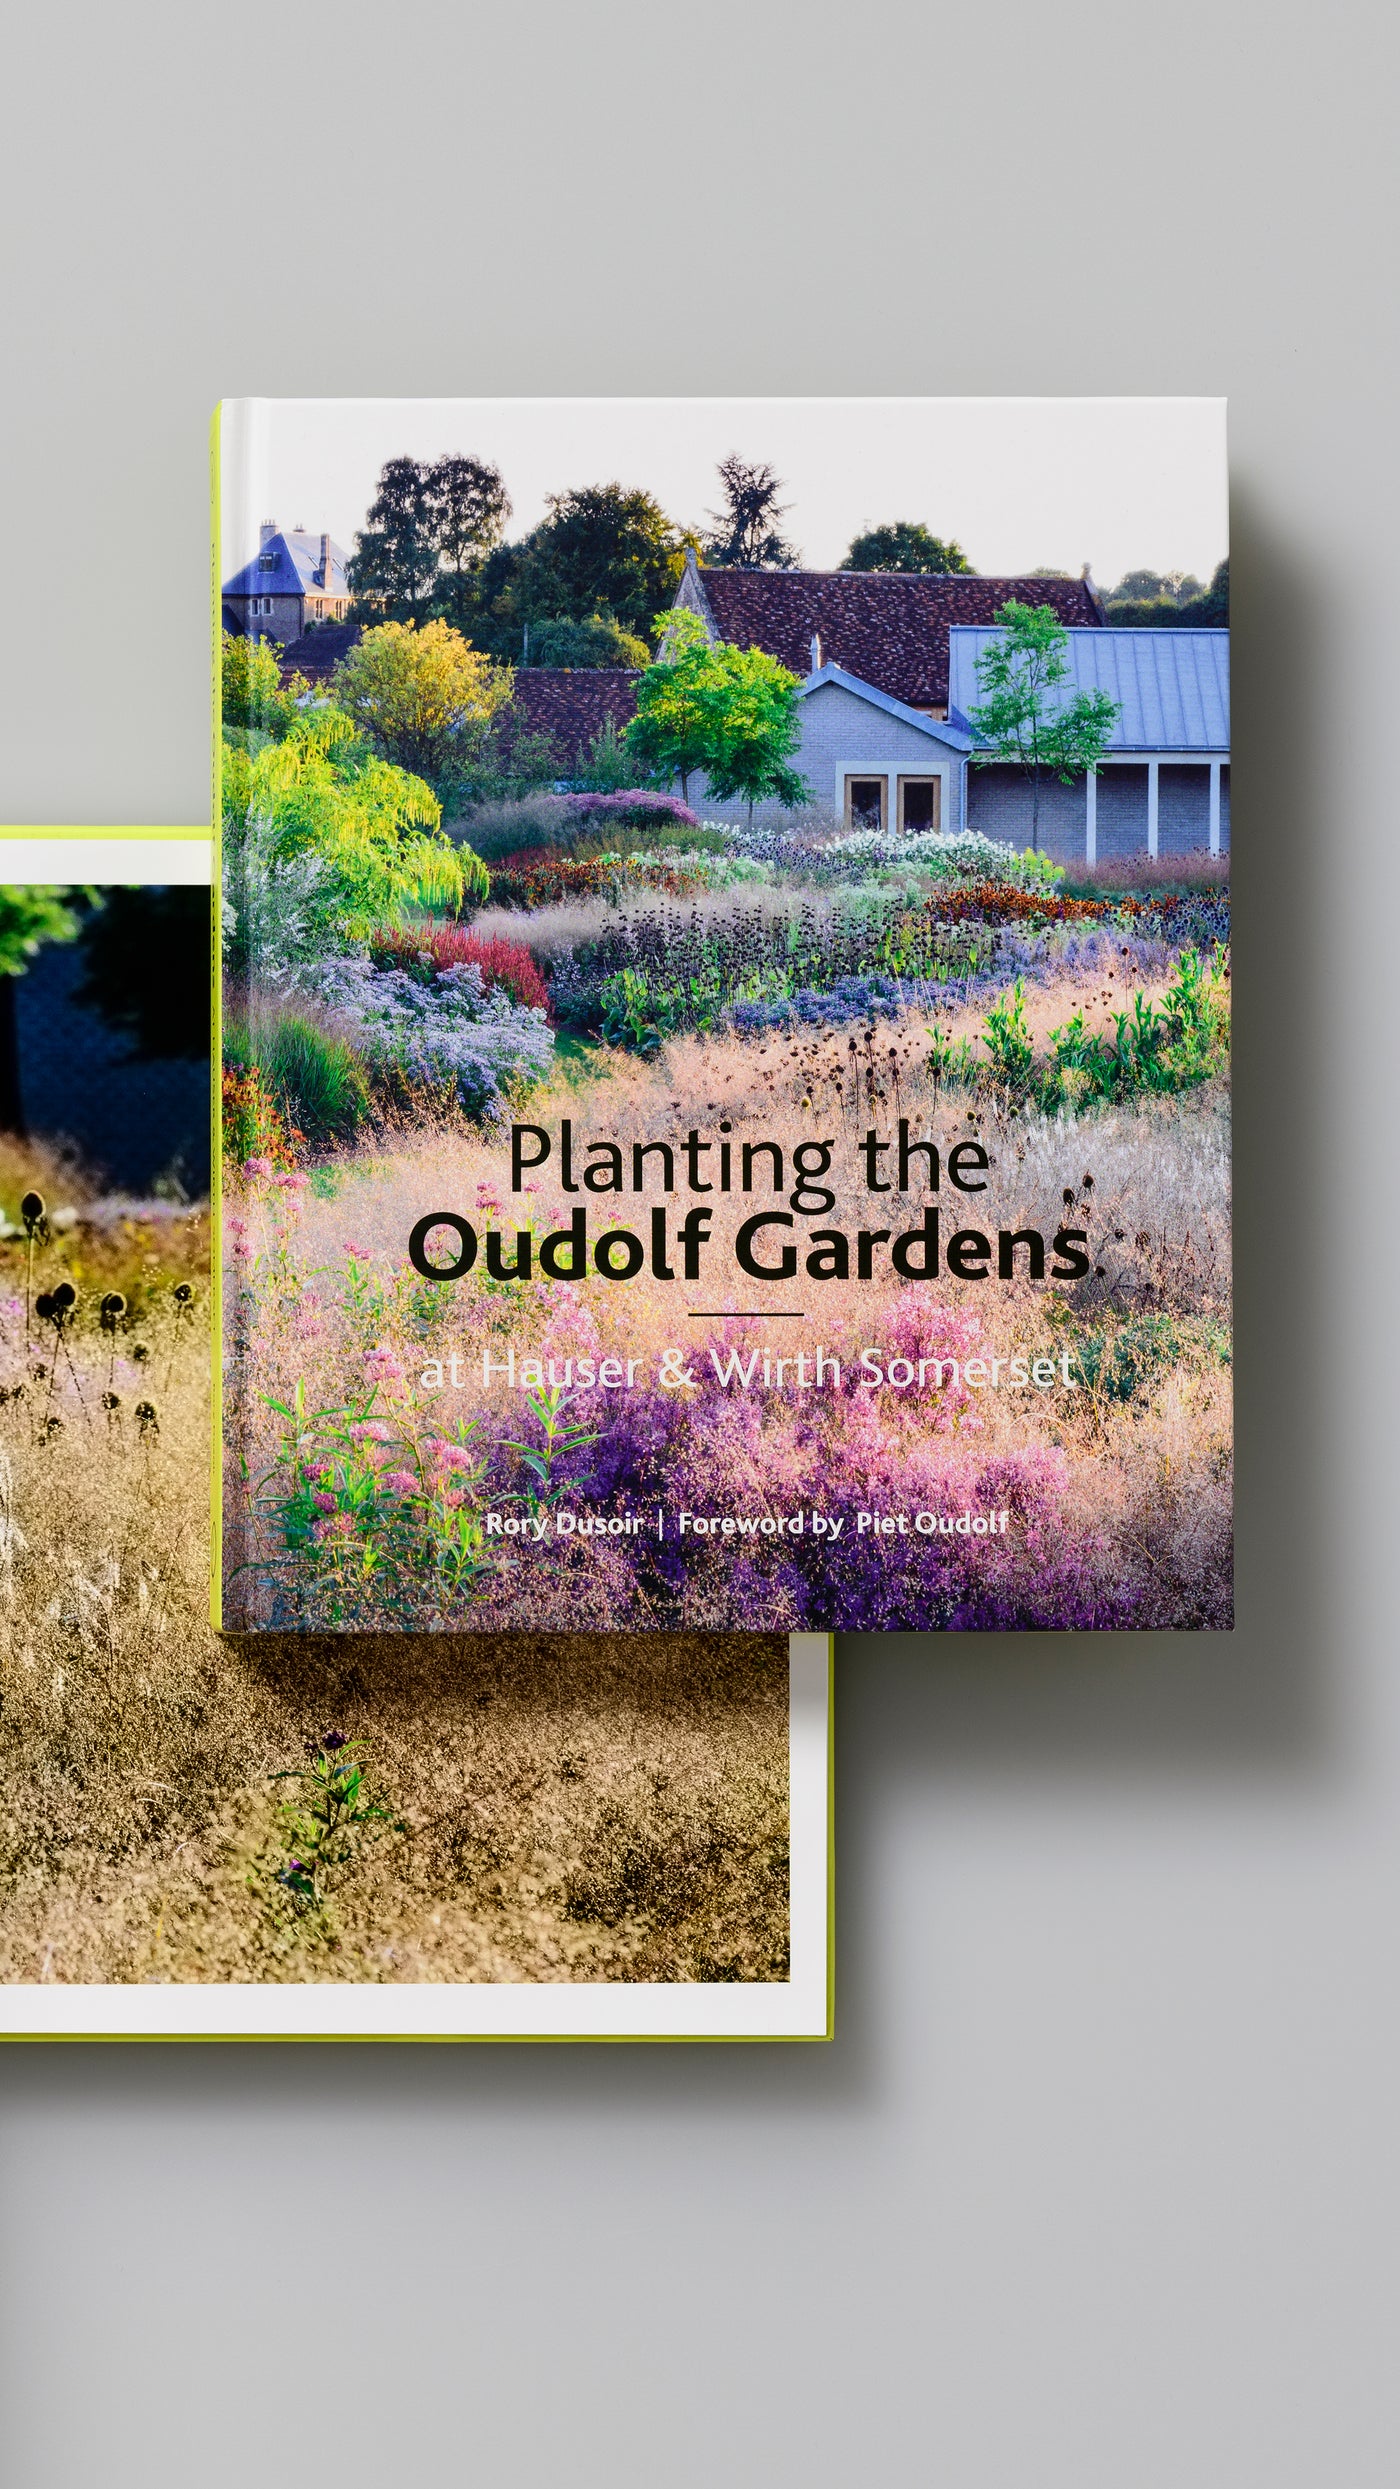 Puriri Lane | Planting The Oudolf Garden At Hauser Wirth & Someset